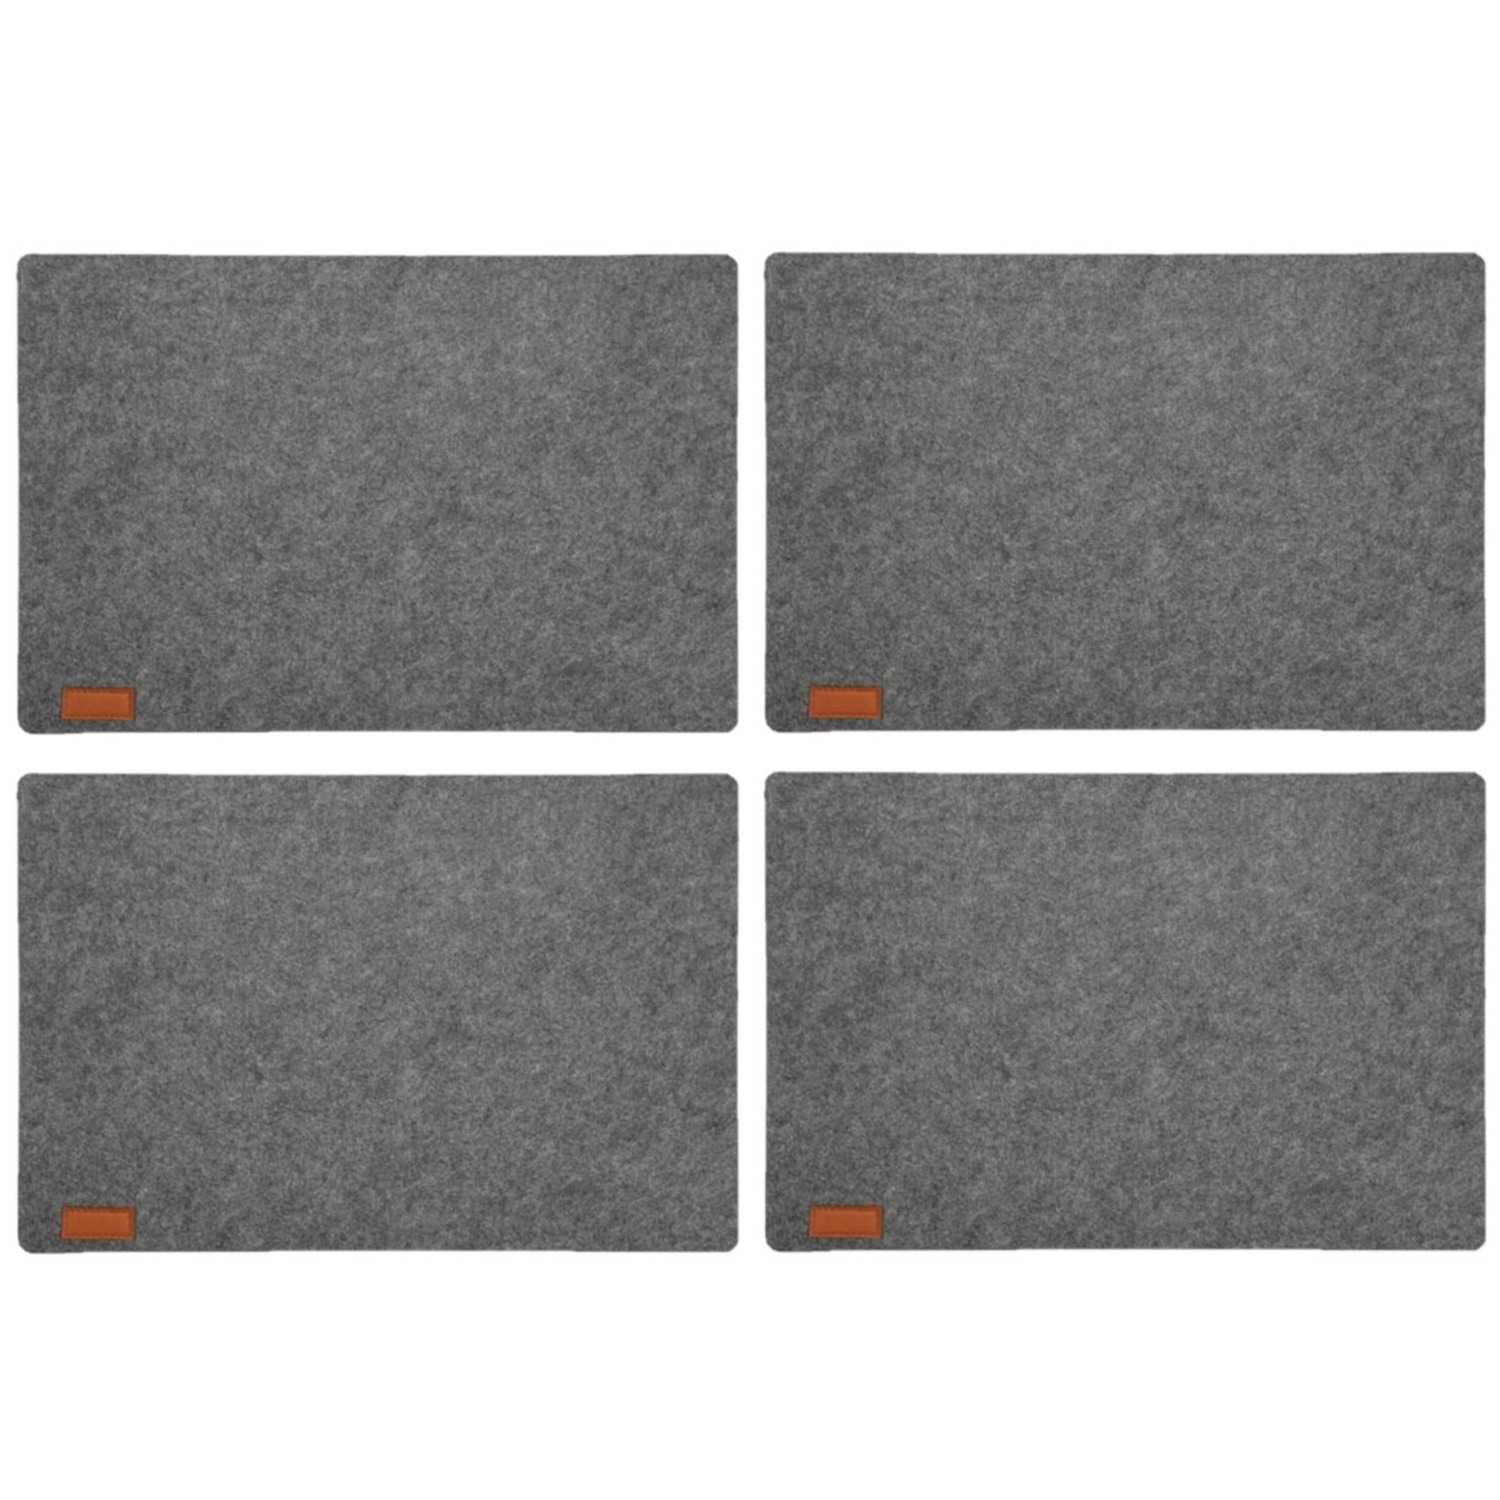 12x stuks rechthoekige placemats met ronde hoeken polyester grijs 30 x 45 cm